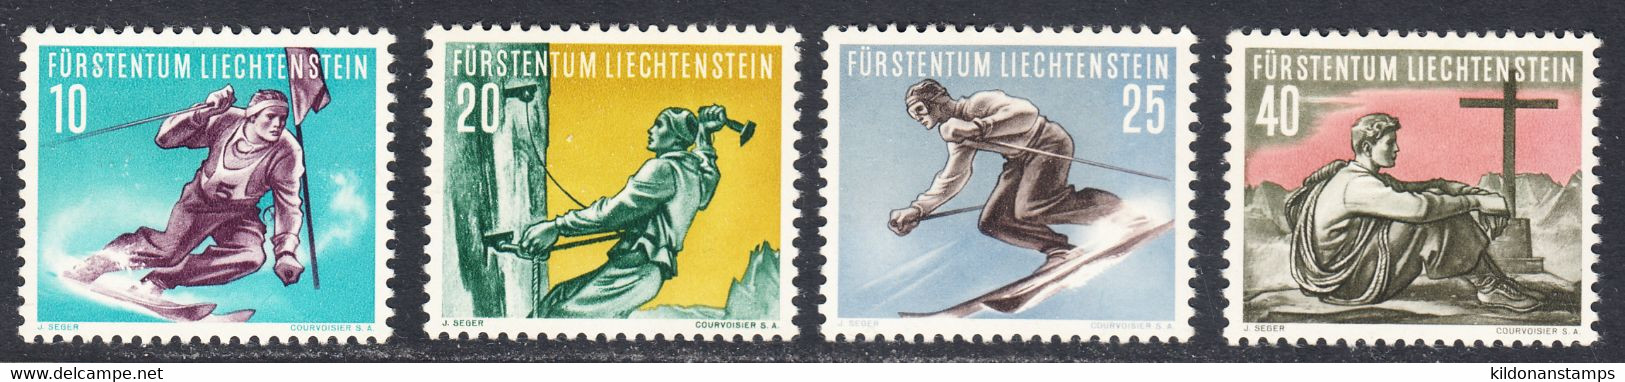 Liechtenstein 1955, Mint Mounted, Sc# 285-292, Yt 296-299, Zu 278-281 - Neufs